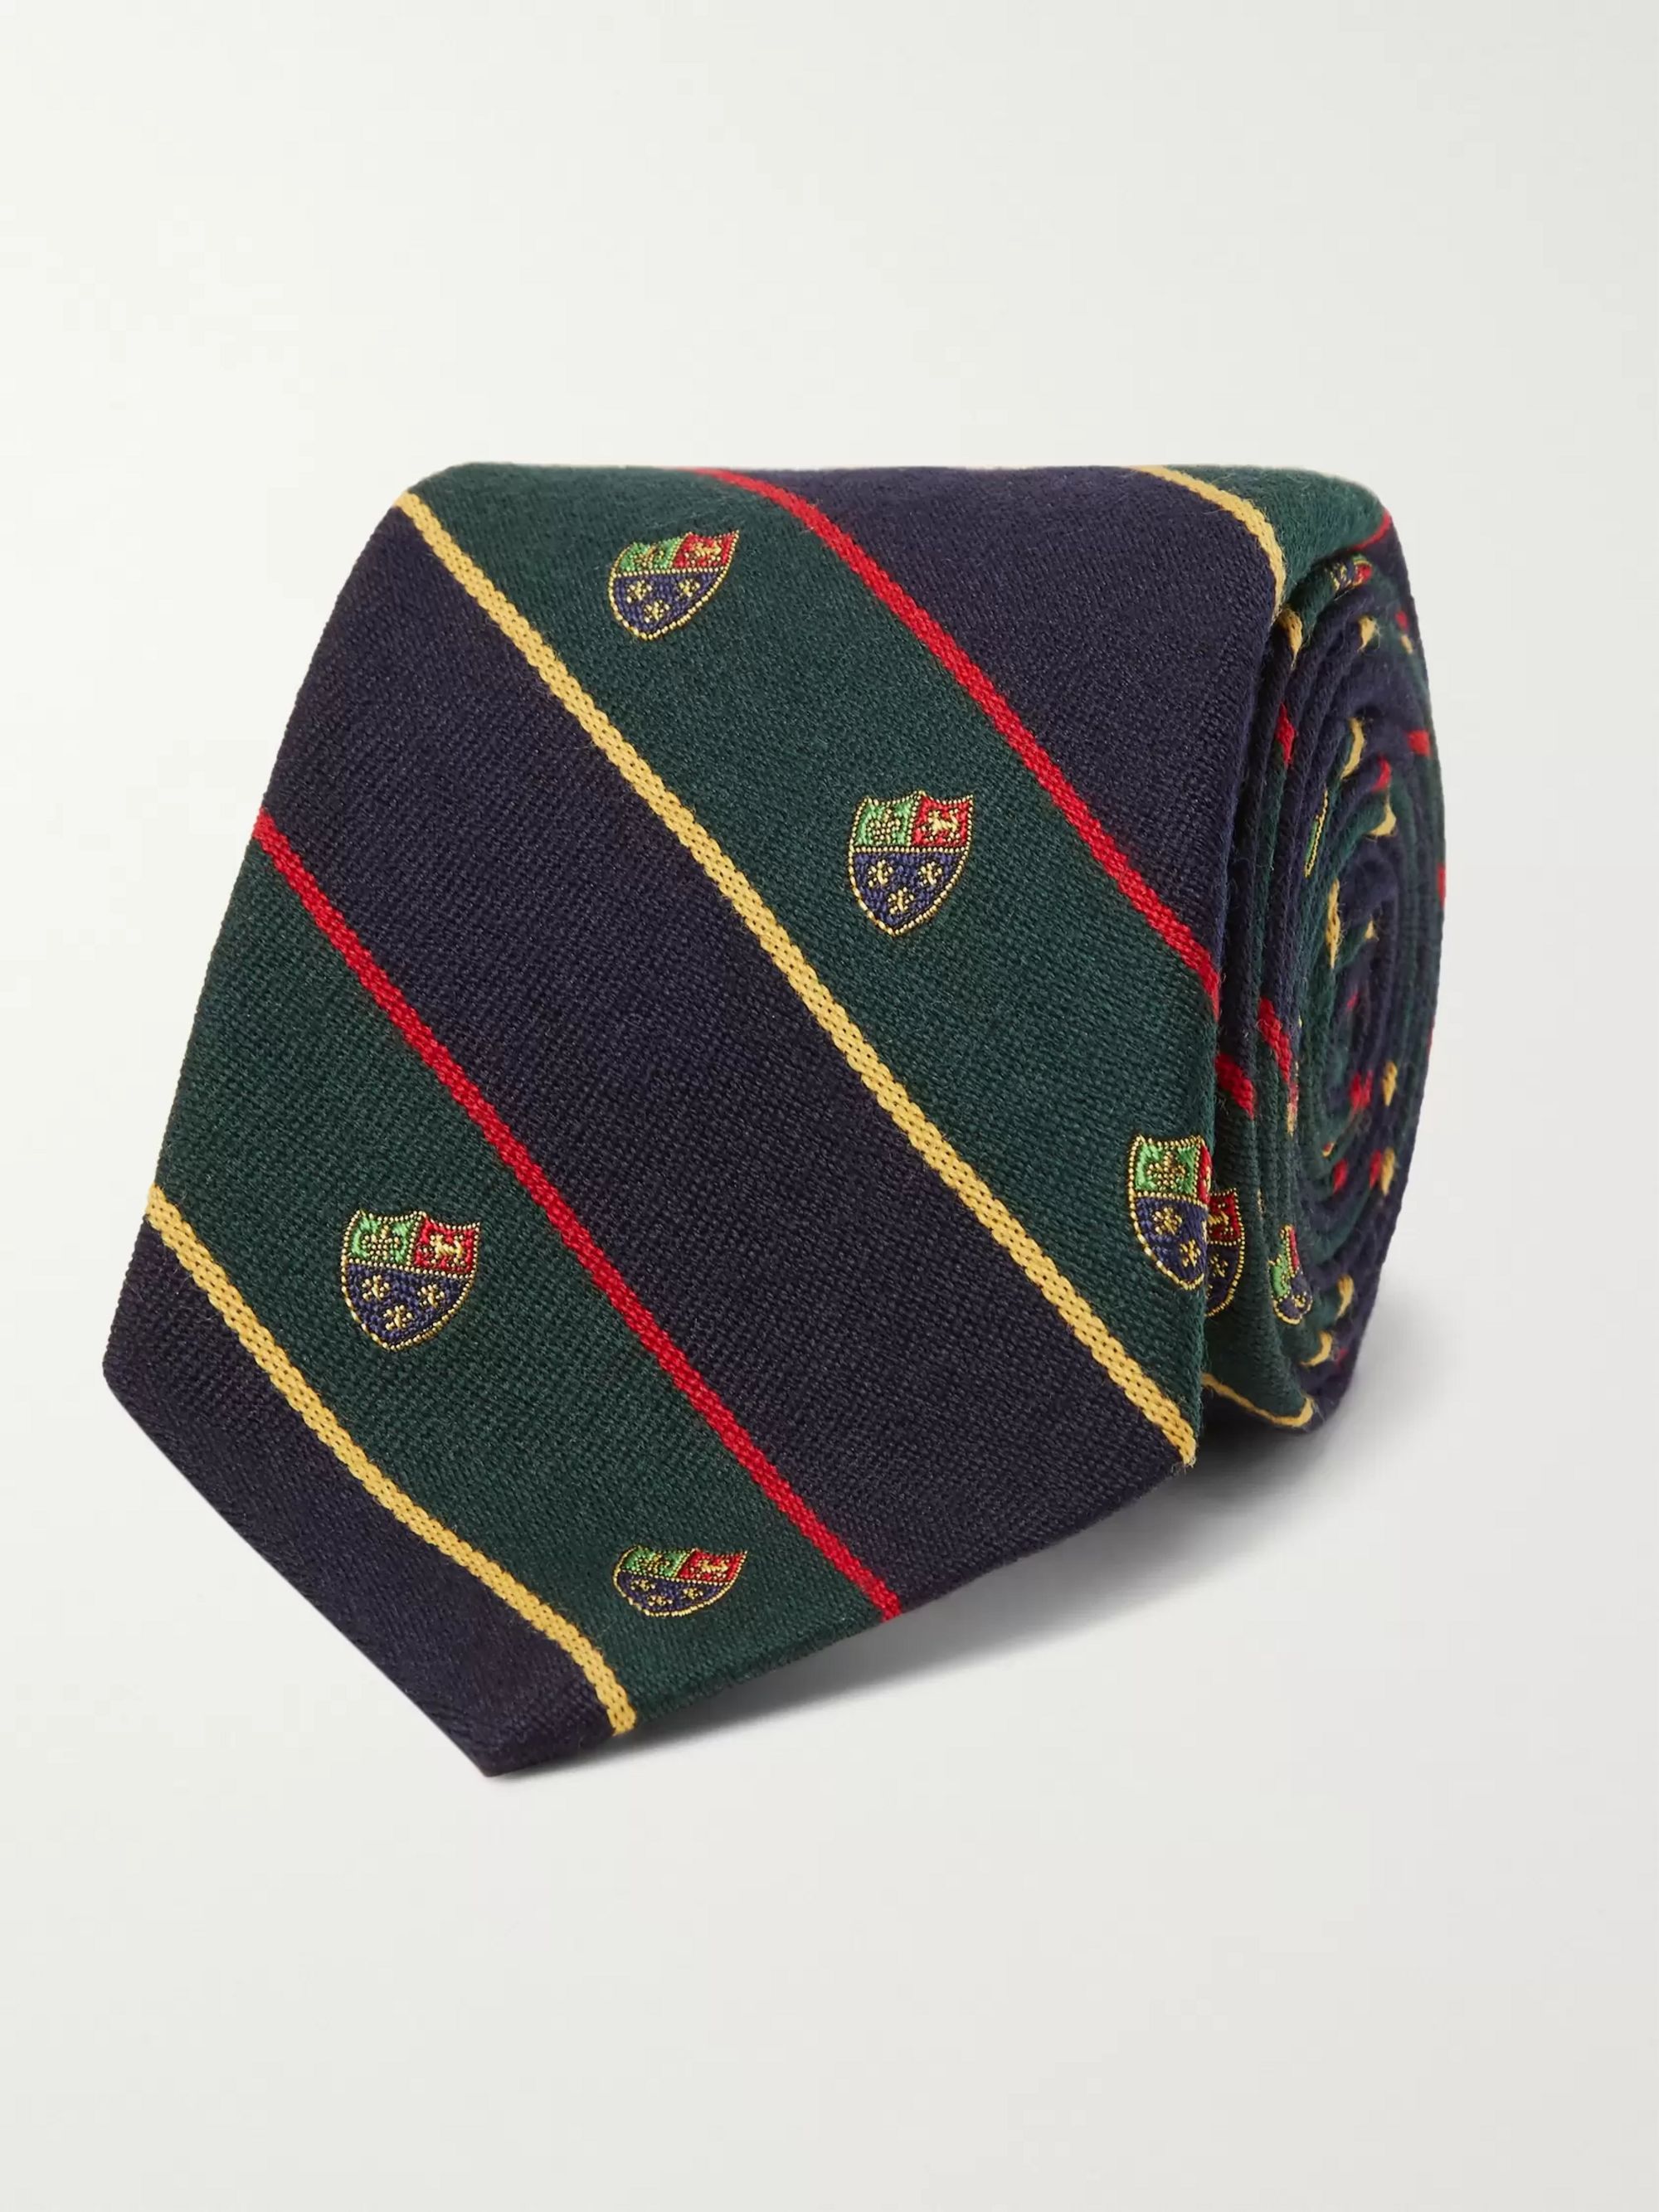 polo ralph lauren necktie